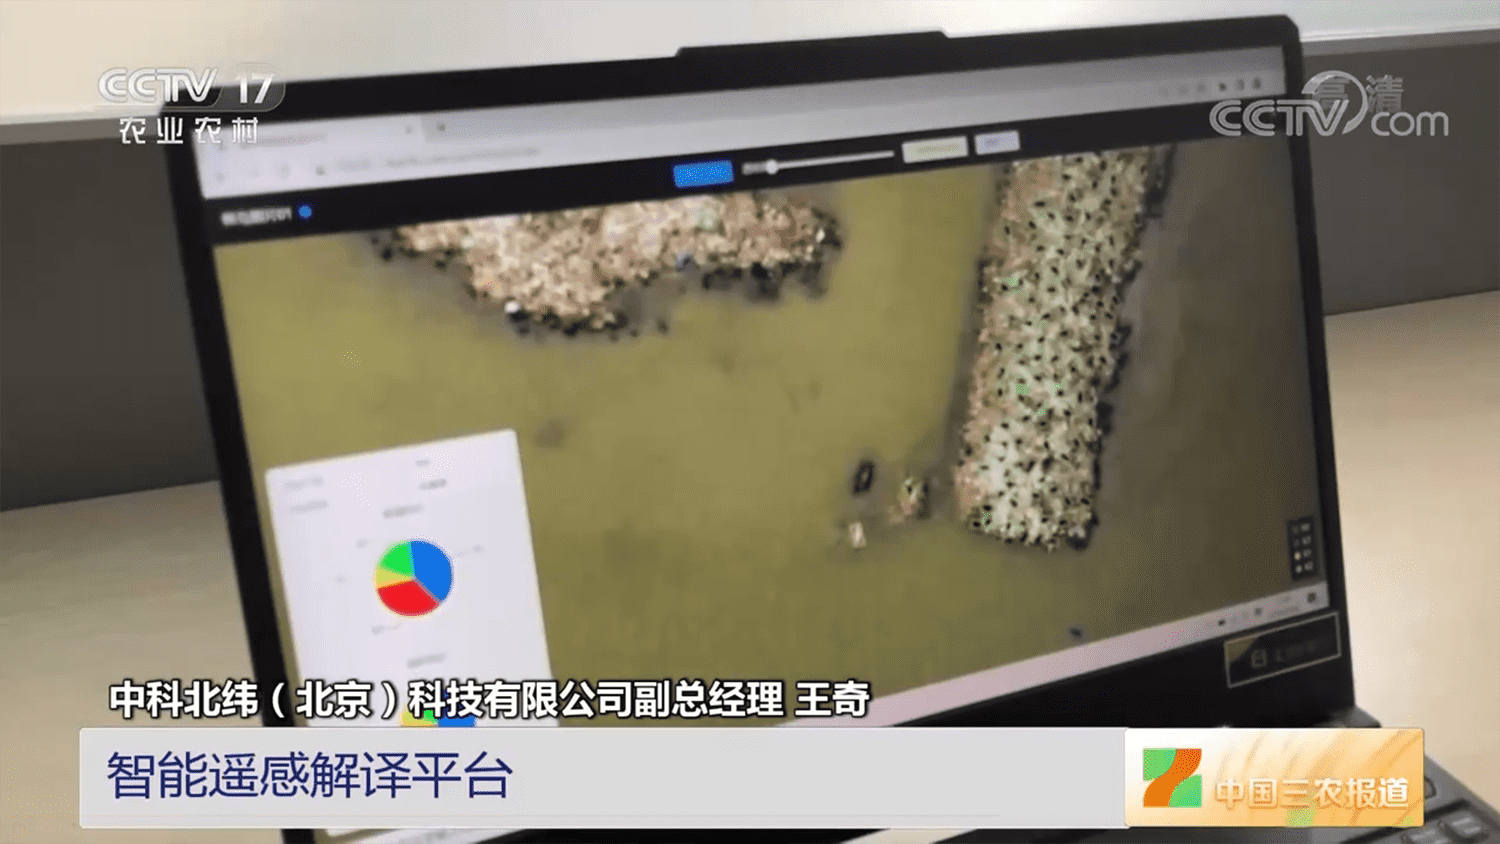 CCTV-17农业农村 |  [中国三农报道]中国科学院植被病虫害遥感监测与预测系统升级版发布